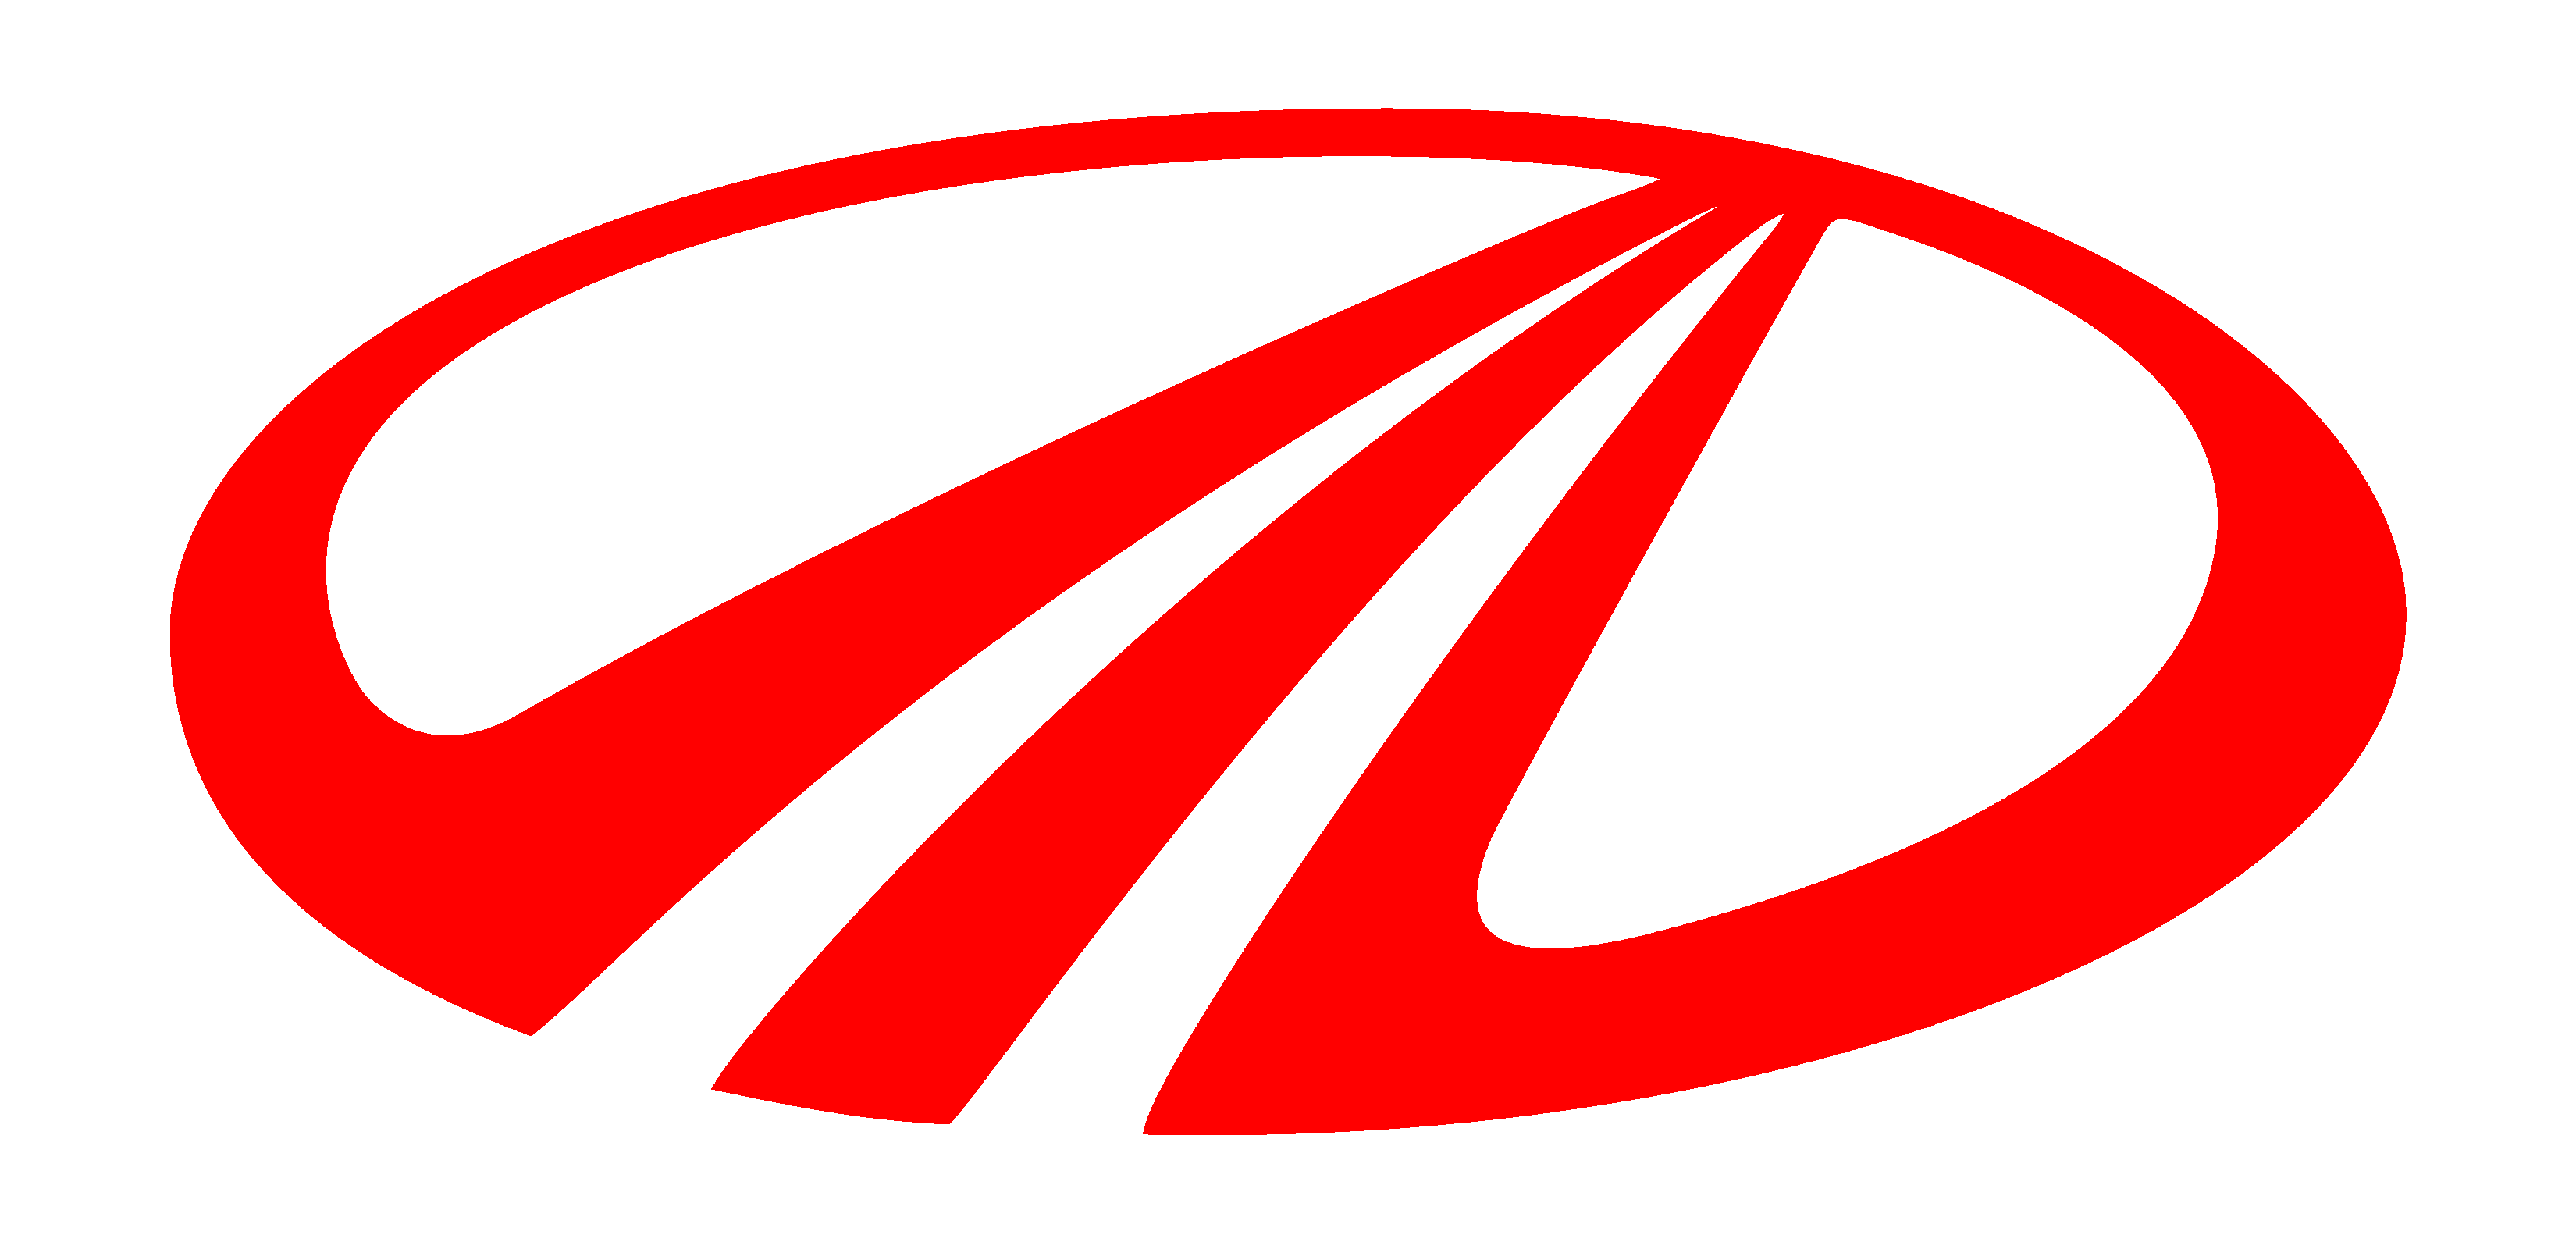 Mahindra_logo